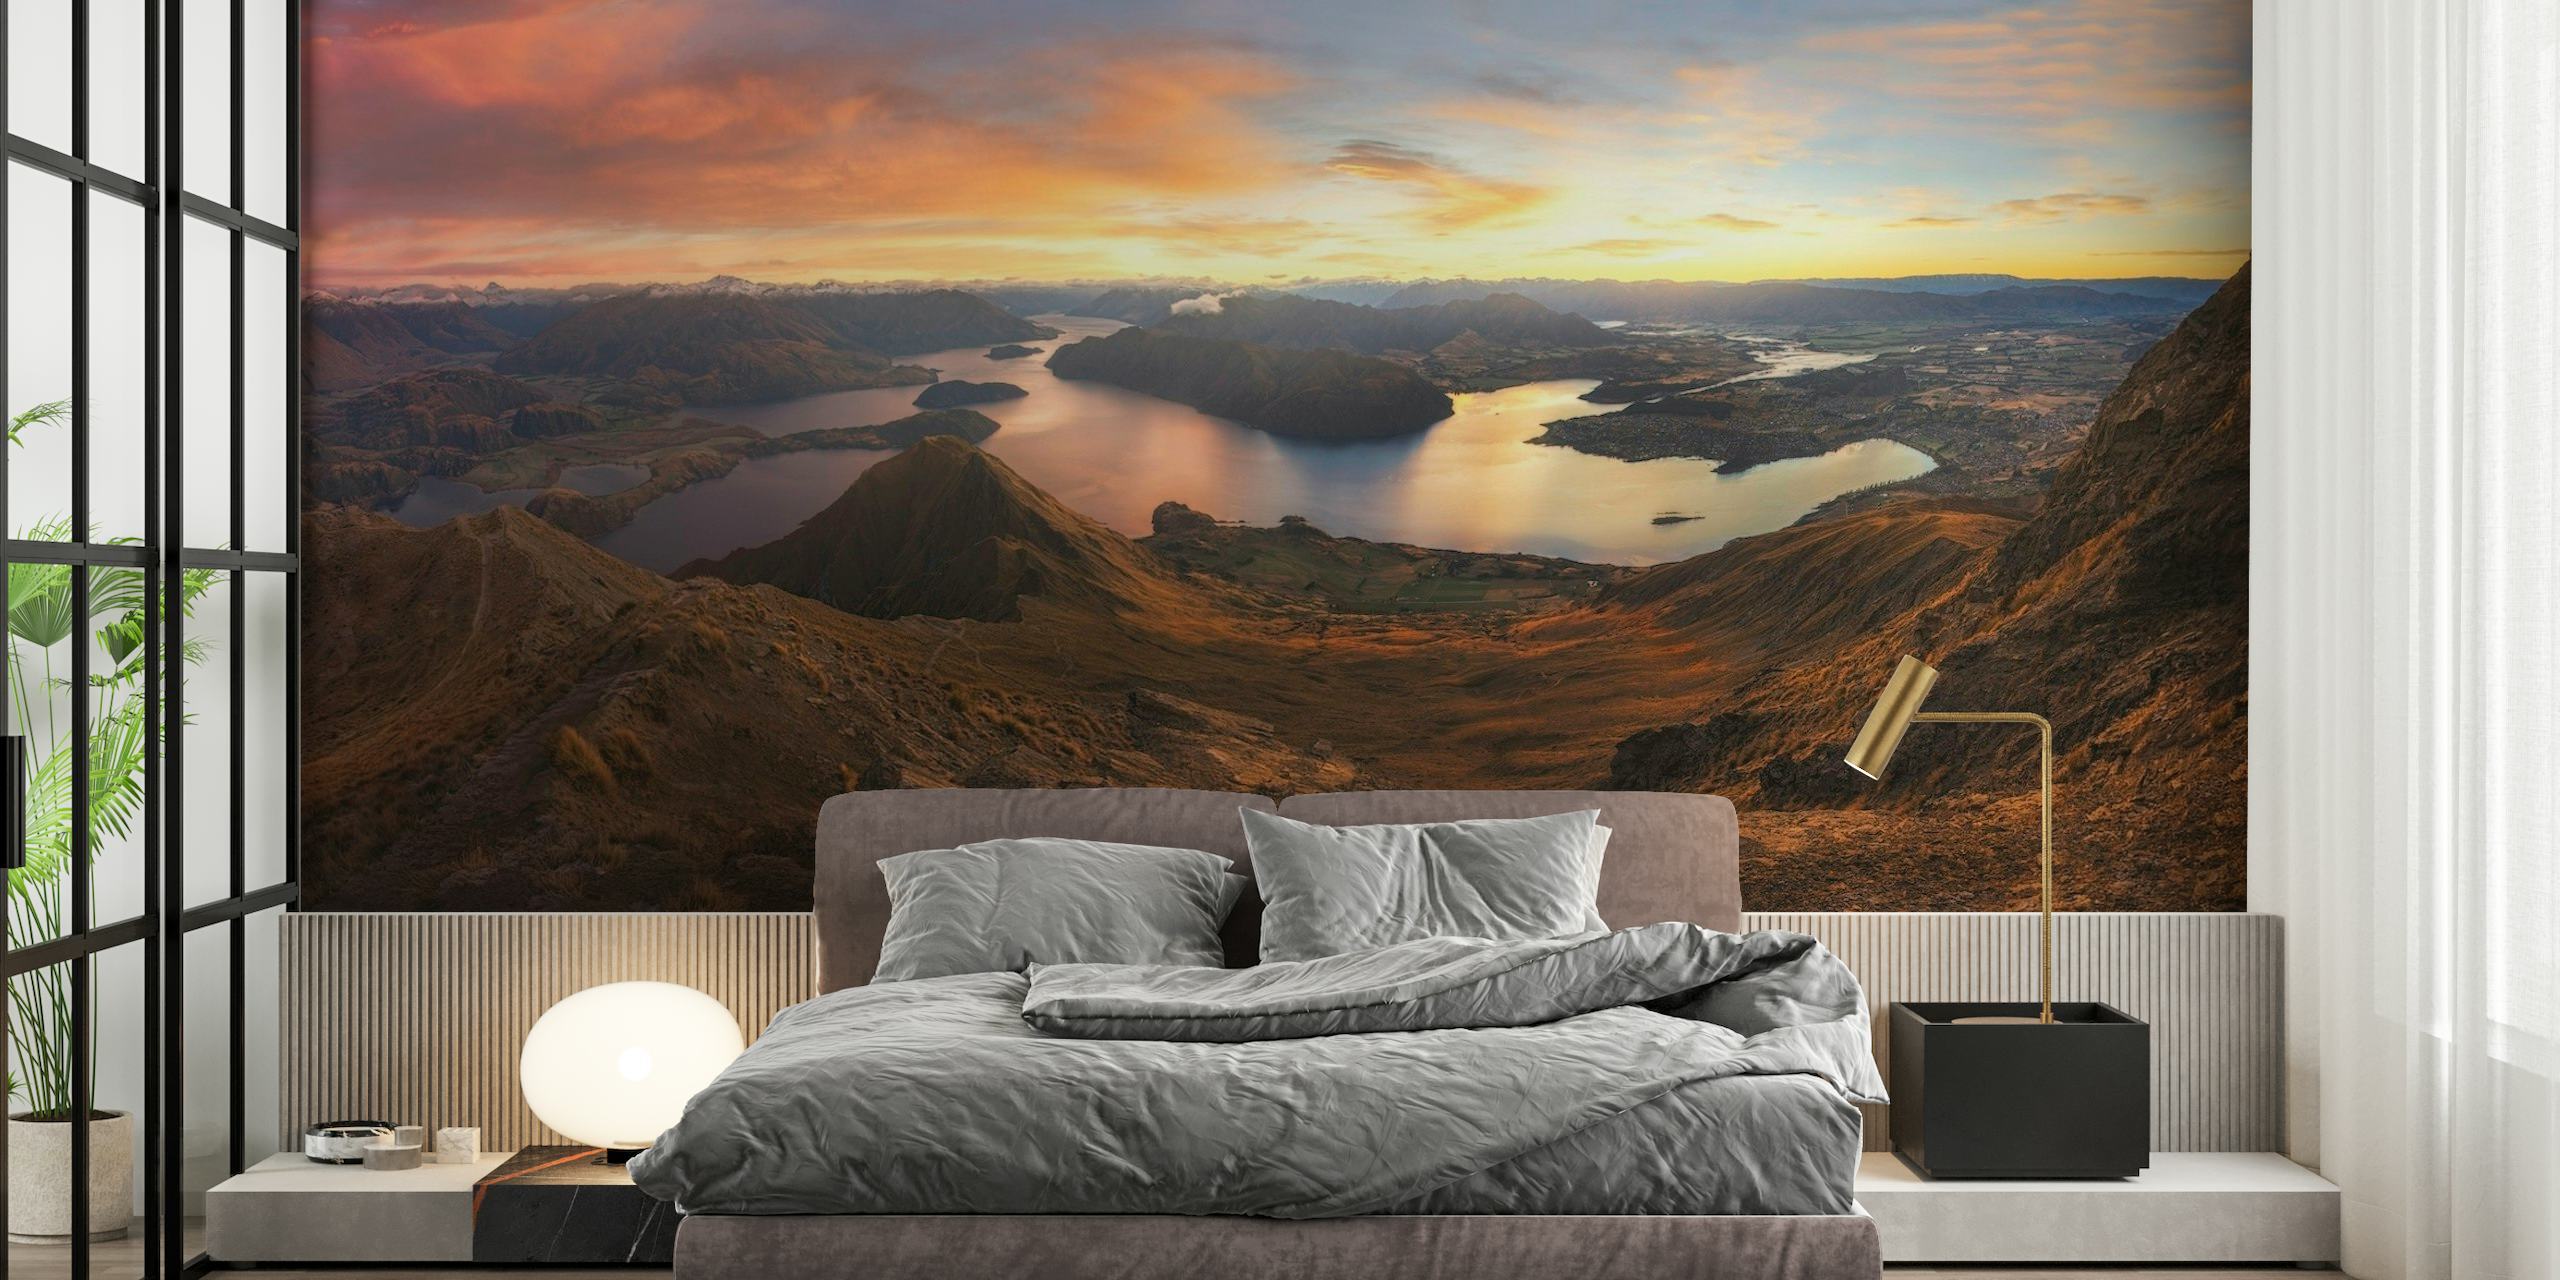 Murale Roys Peak Panorama View représentant un lever de soleil sur un lac serein et des montagnes escarpées.